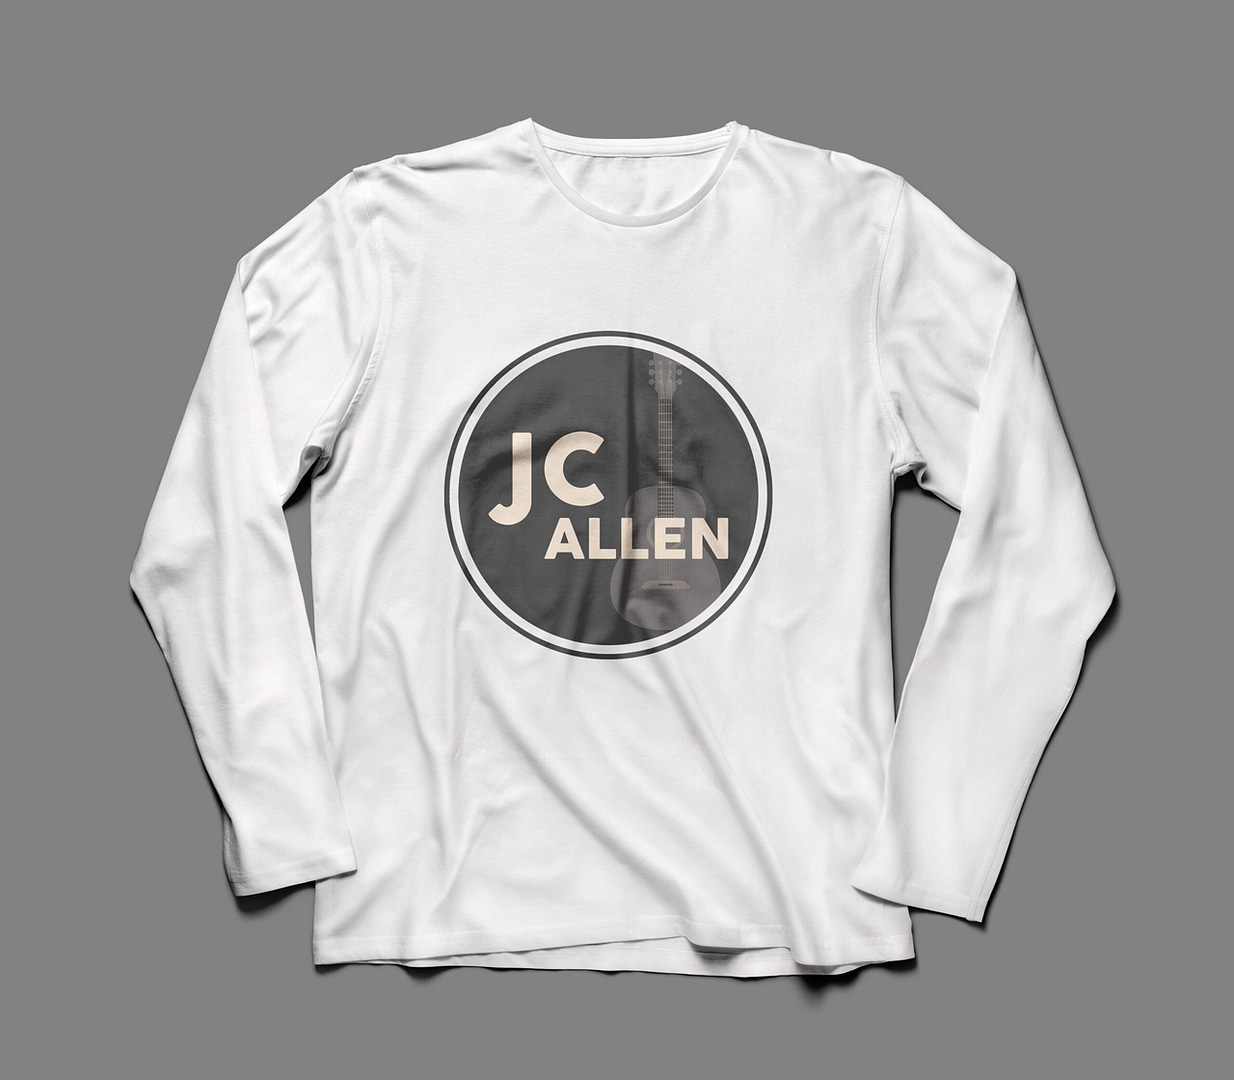 JC Allen and C2 Branding by Lilly Luke